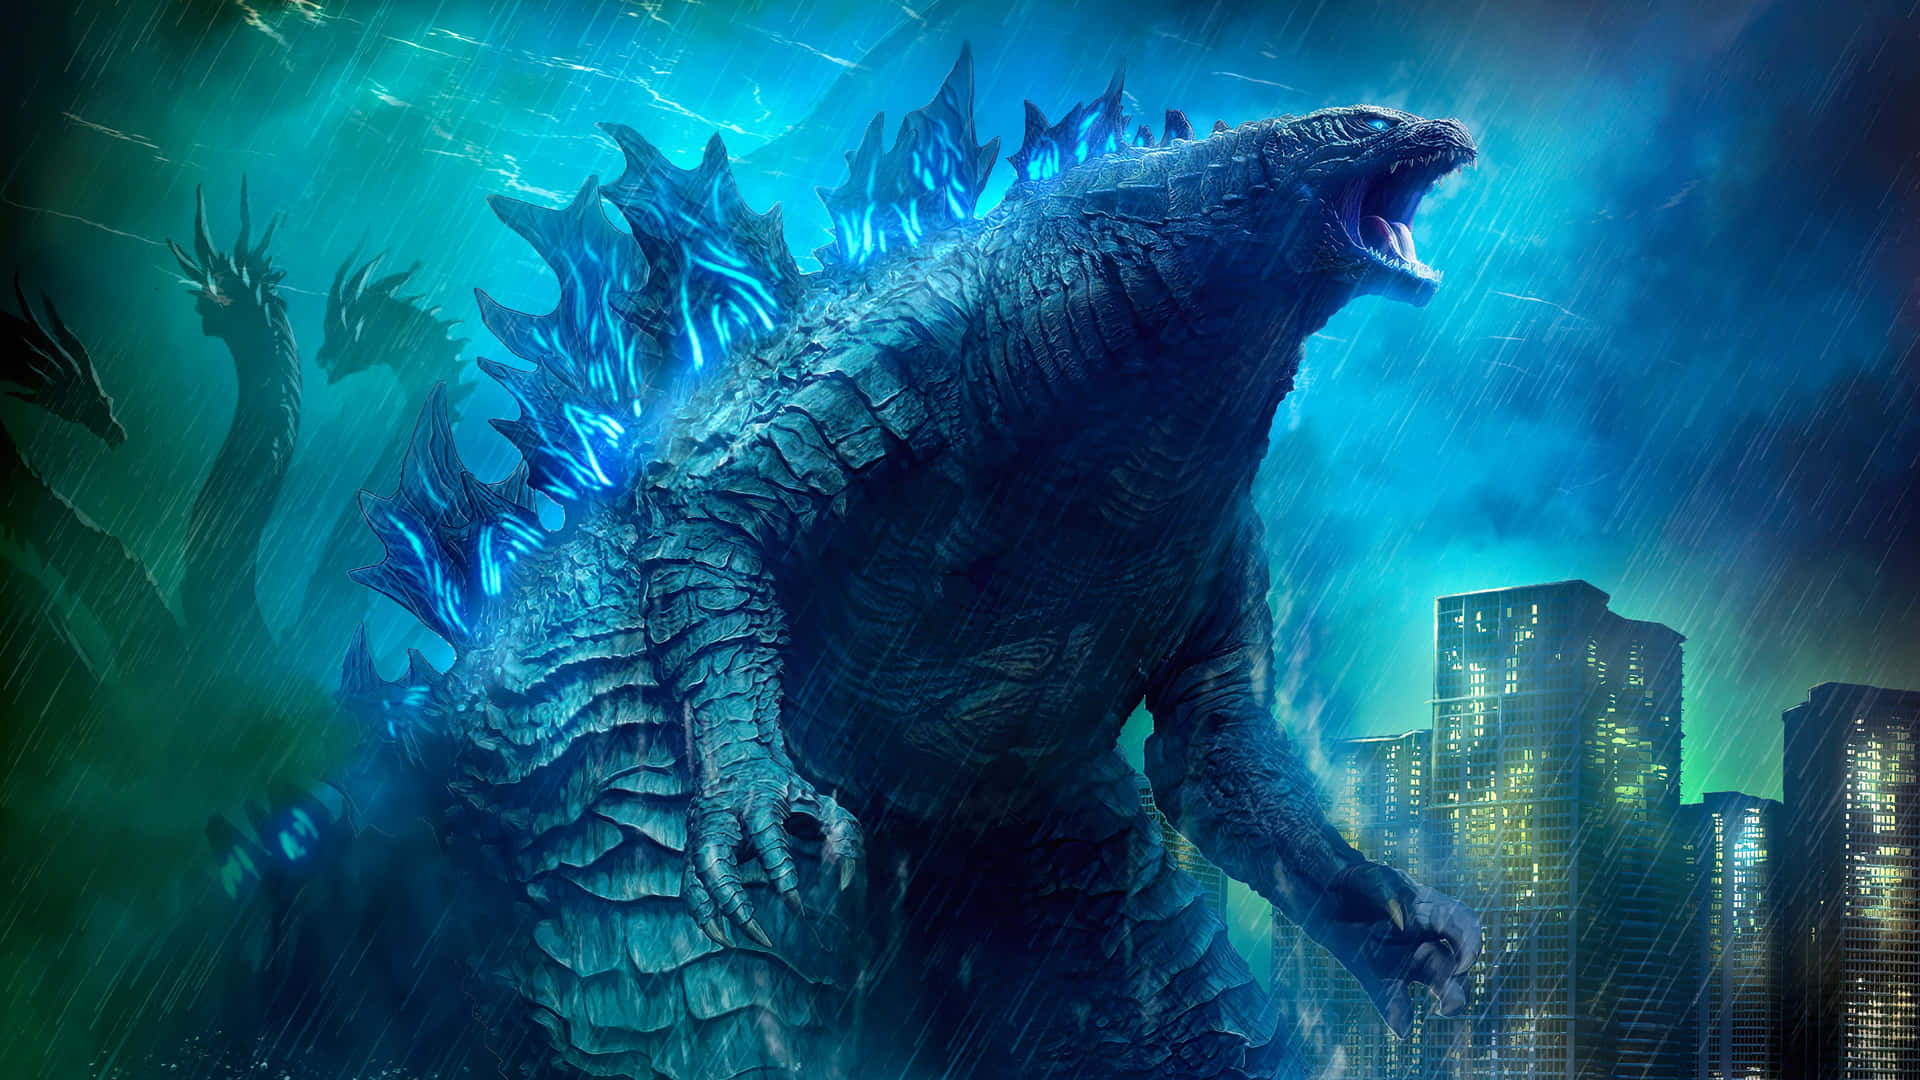 Godzilla Background Wallpaper